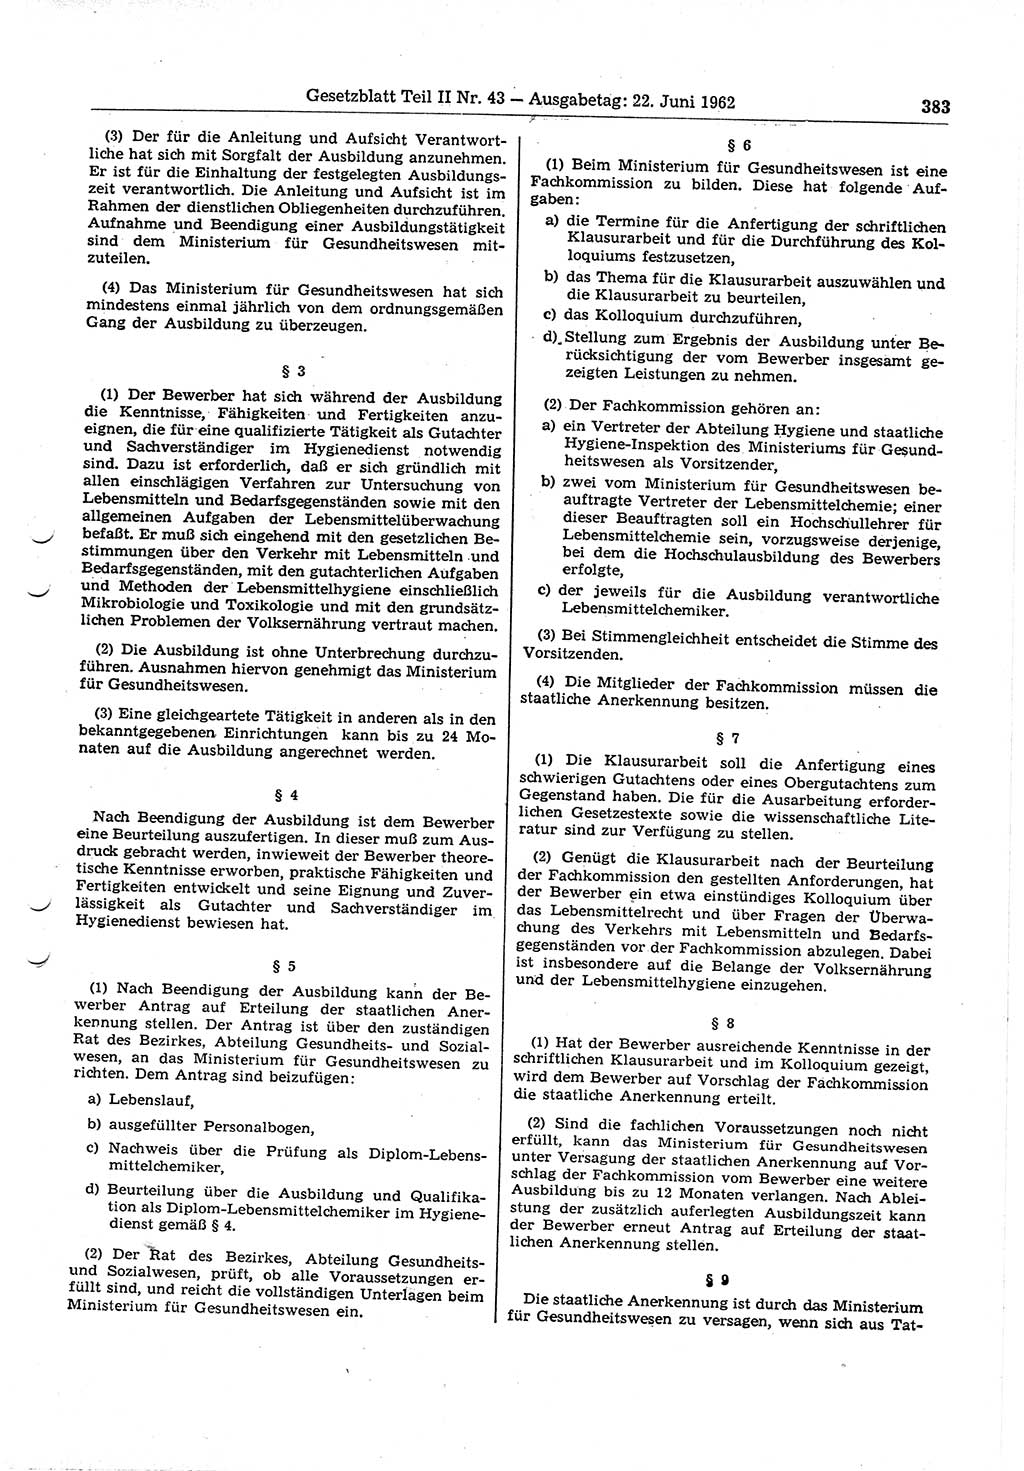 Gesetzblatt (GBl.) der Deutschen Demokratischen Republik (DDR) Teil ⅠⅠ 1962, Seite 383 (GBl. DDR ⅠⅠ 1962, S. 383)